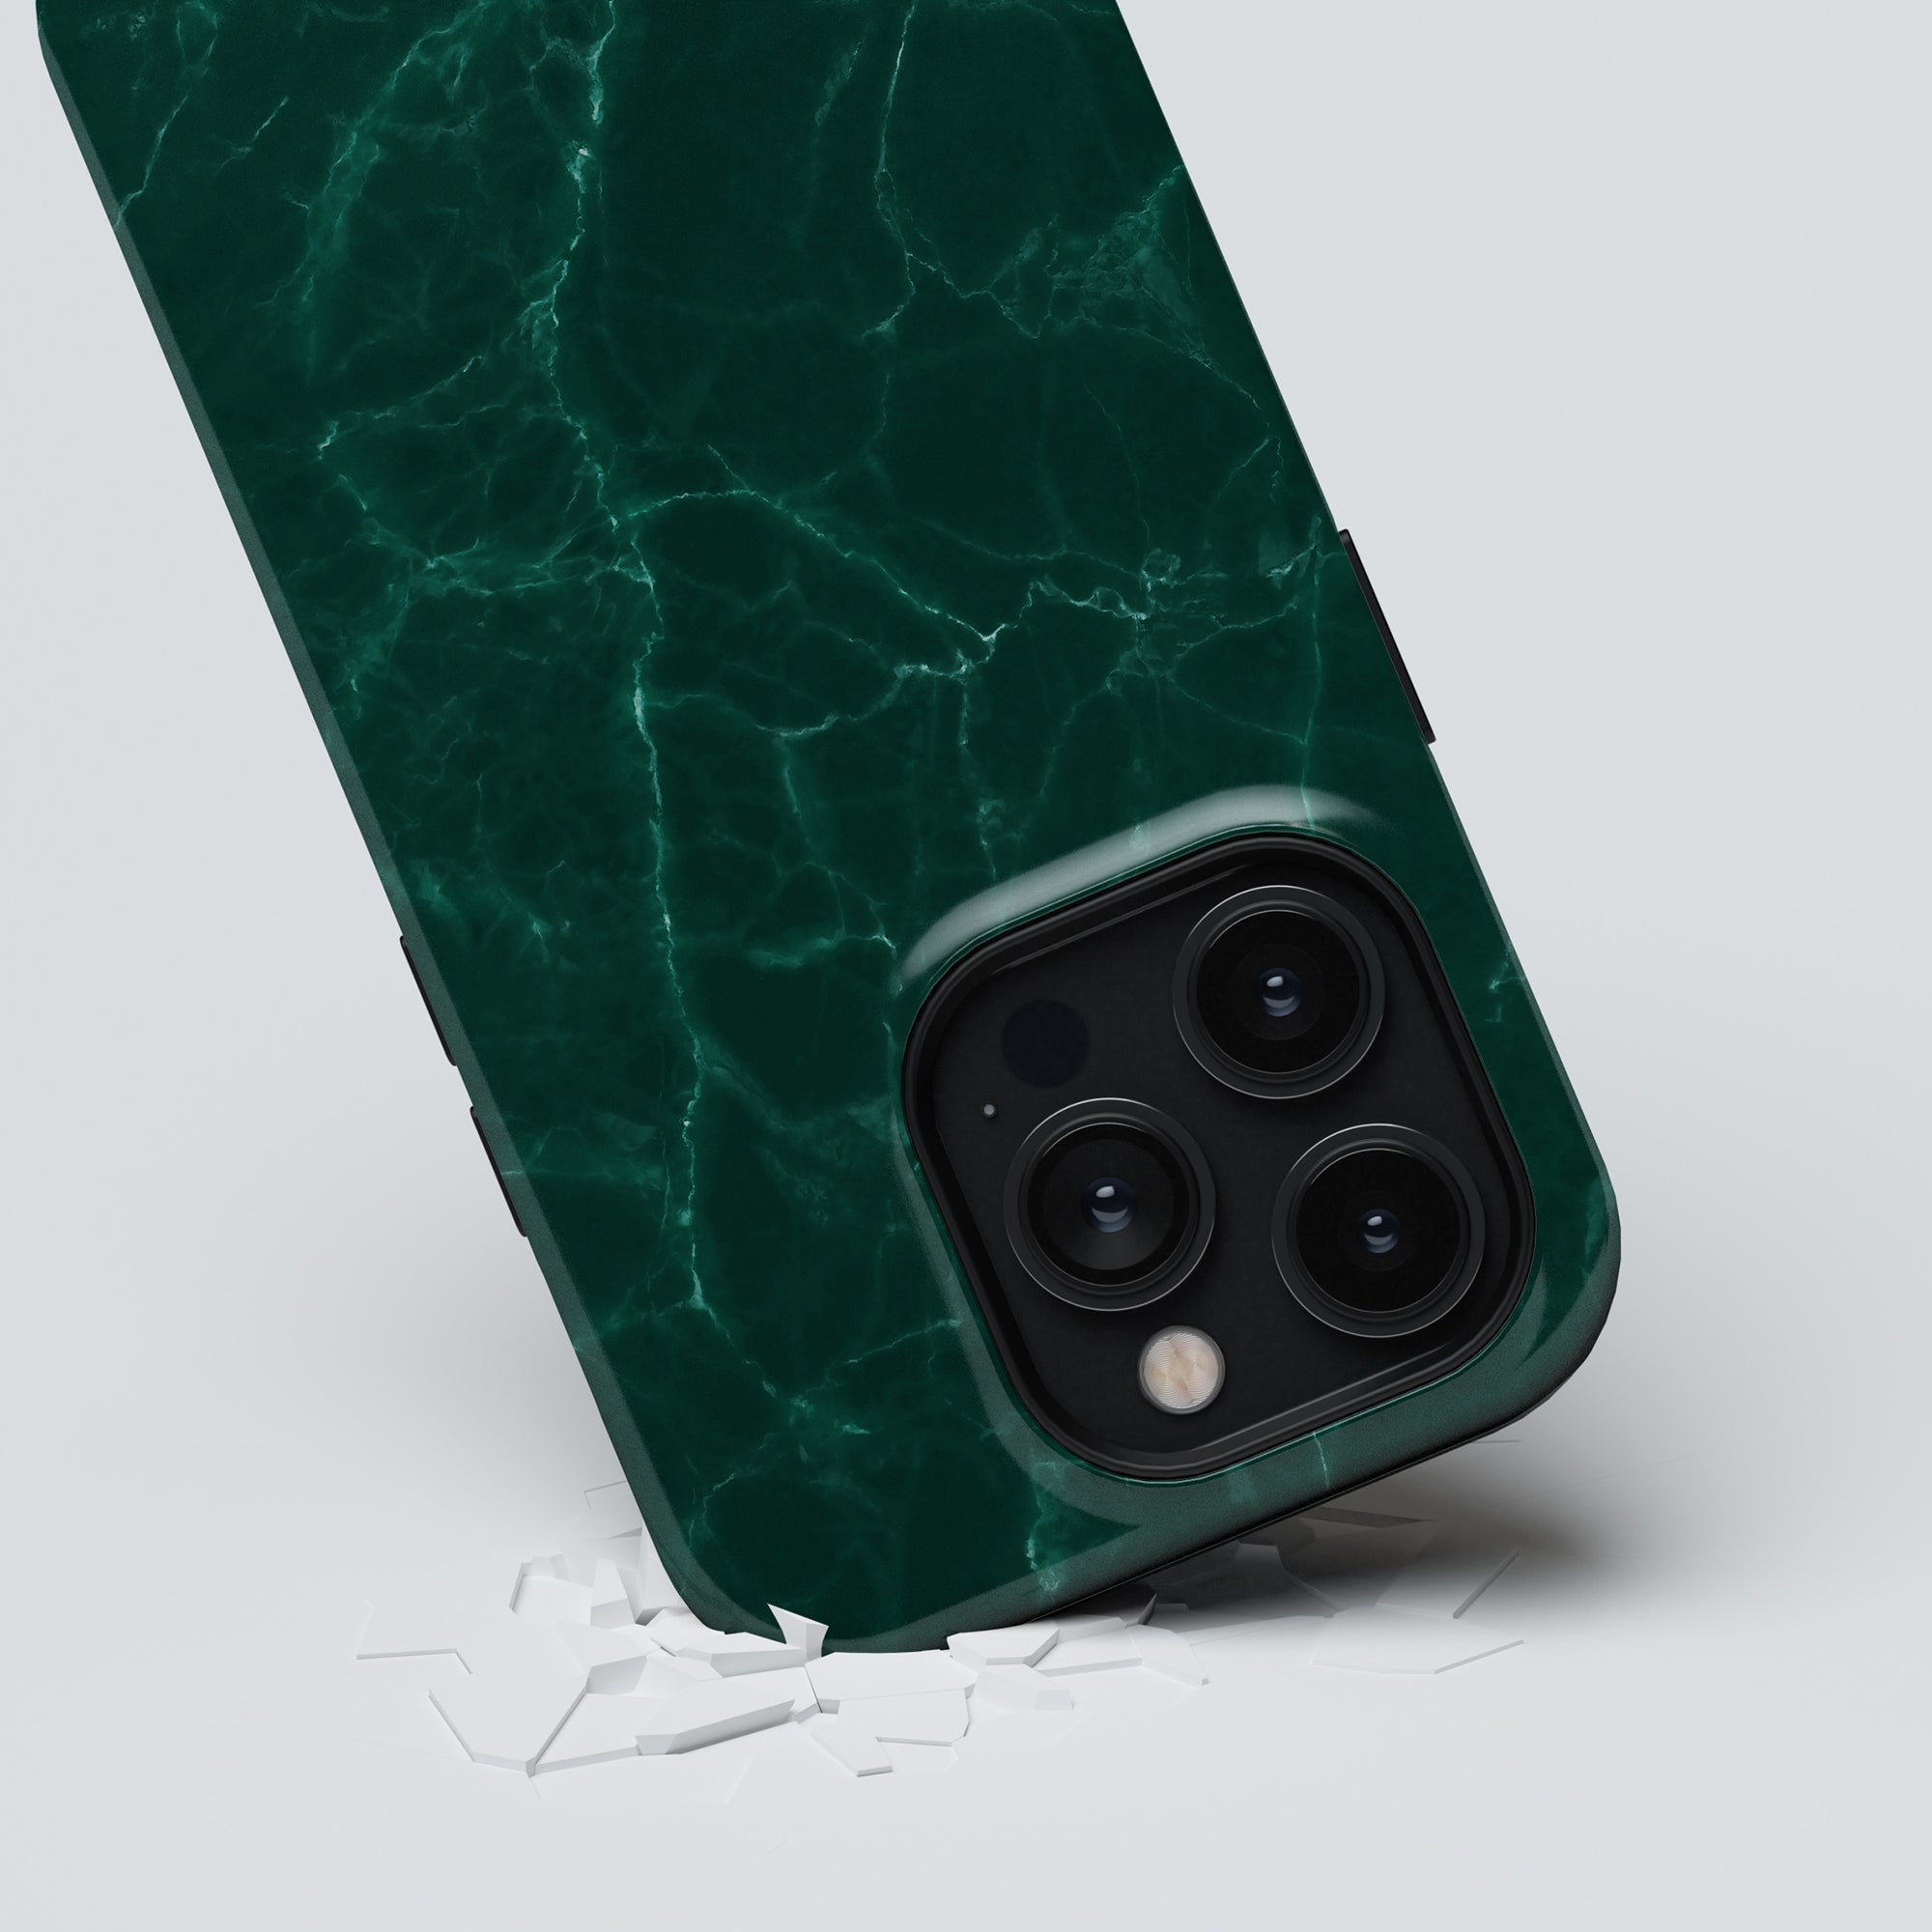 Ett grönt marmor Roar Swedens Ripples - Tufft fodral till iPhone 11 Pro. Fodralet har en tunn och lätt design som inte tar mycket plats i fickan eller handväskan.